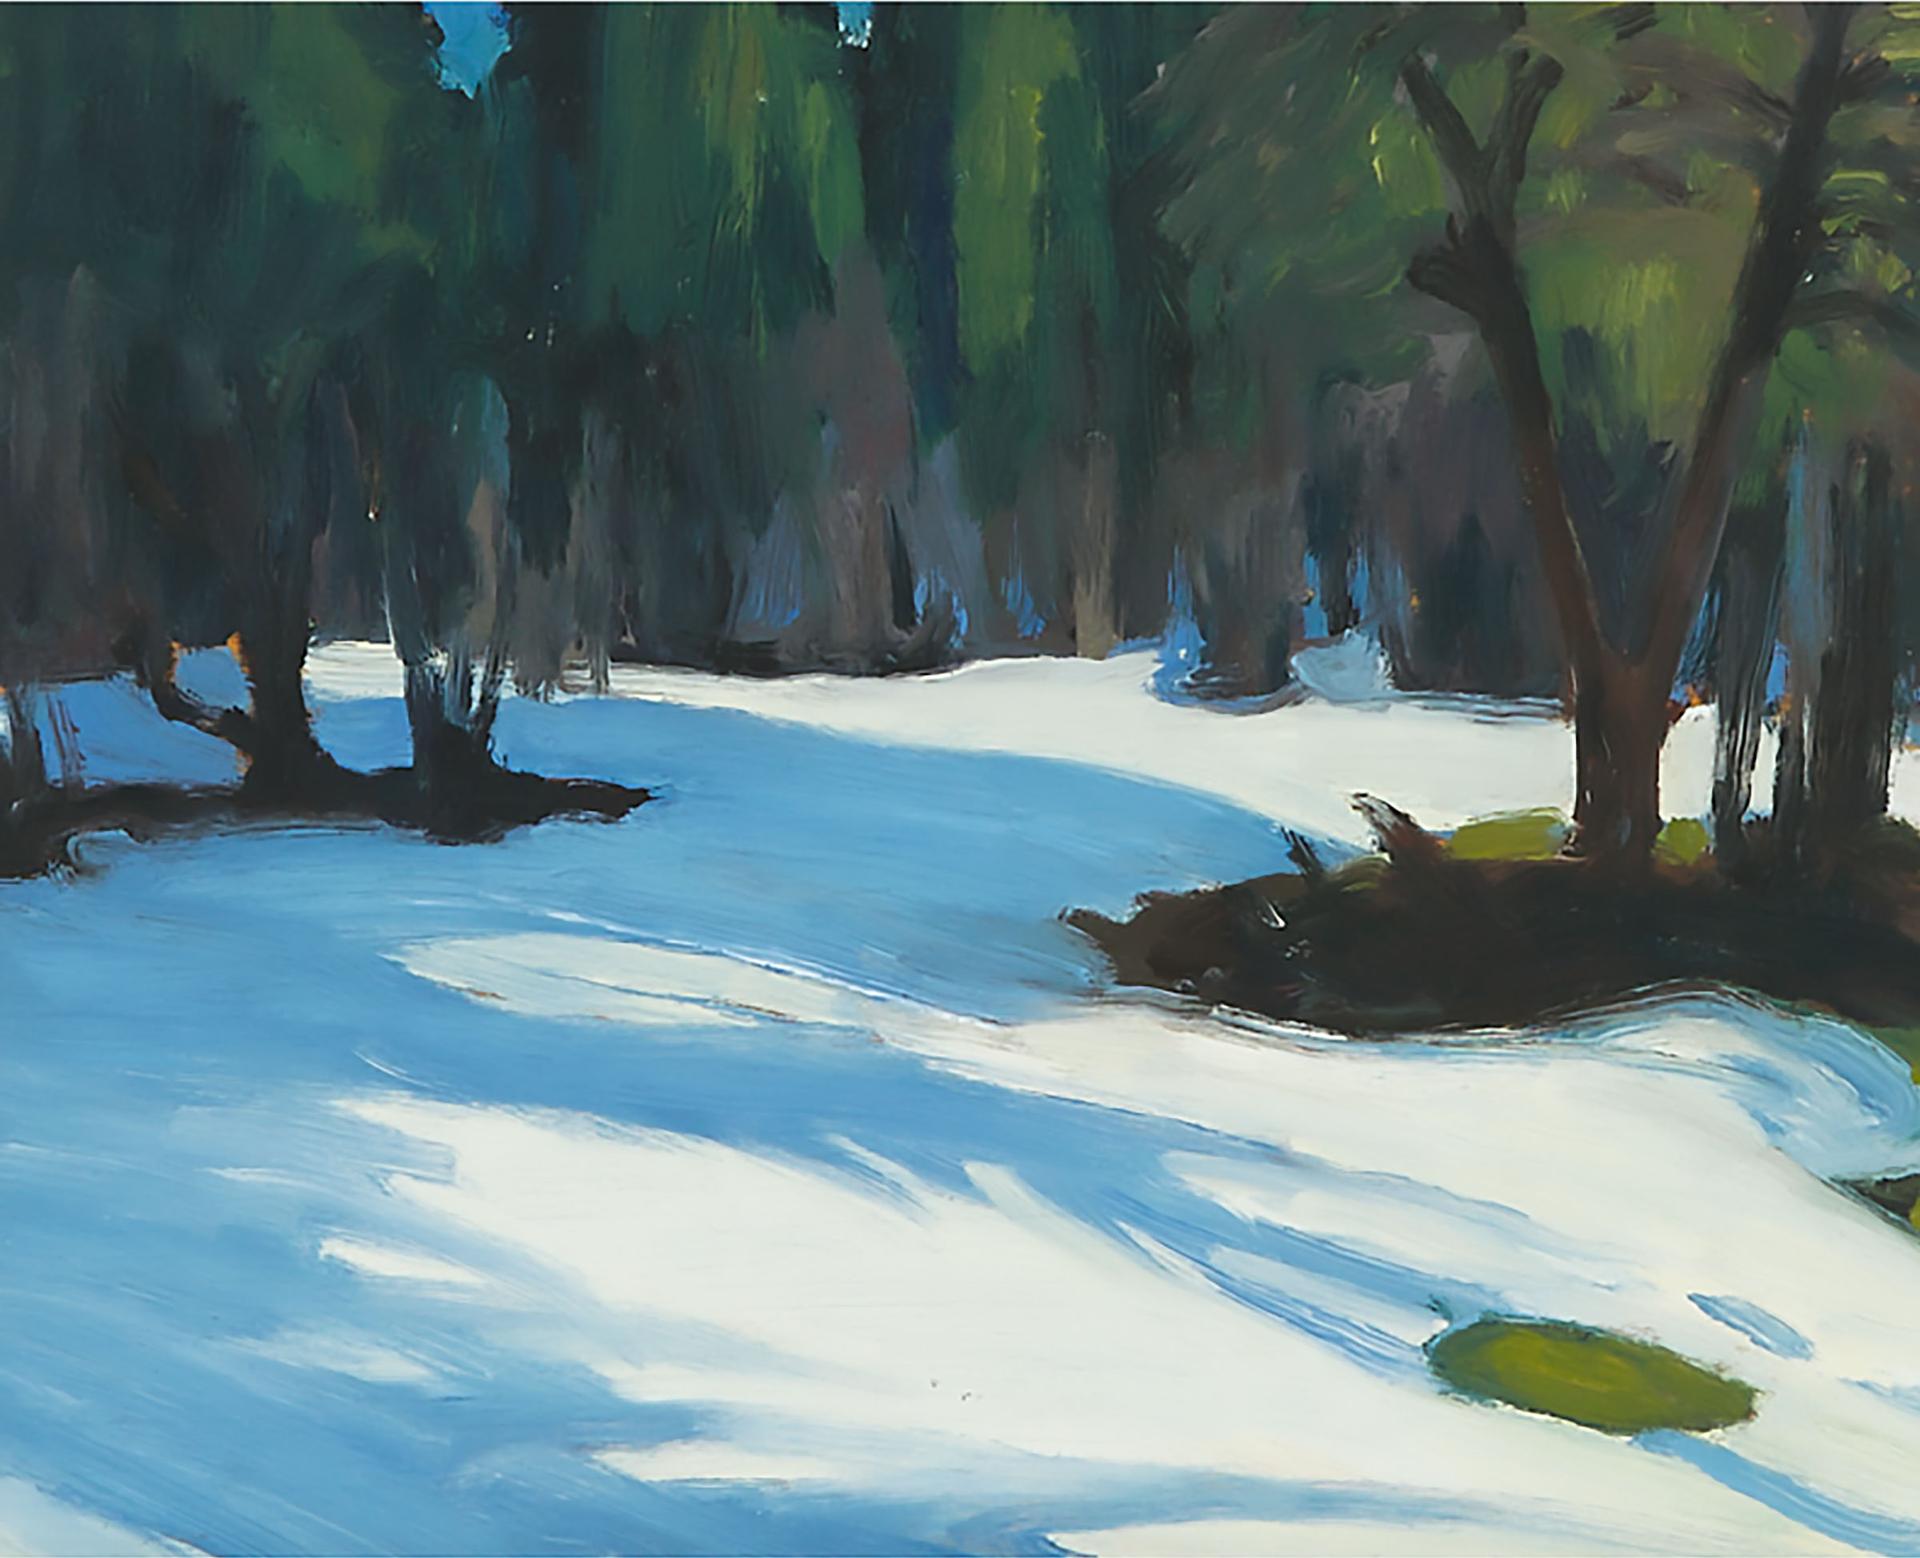 Herald Nix (1951) - Snowy Landscape, 1999